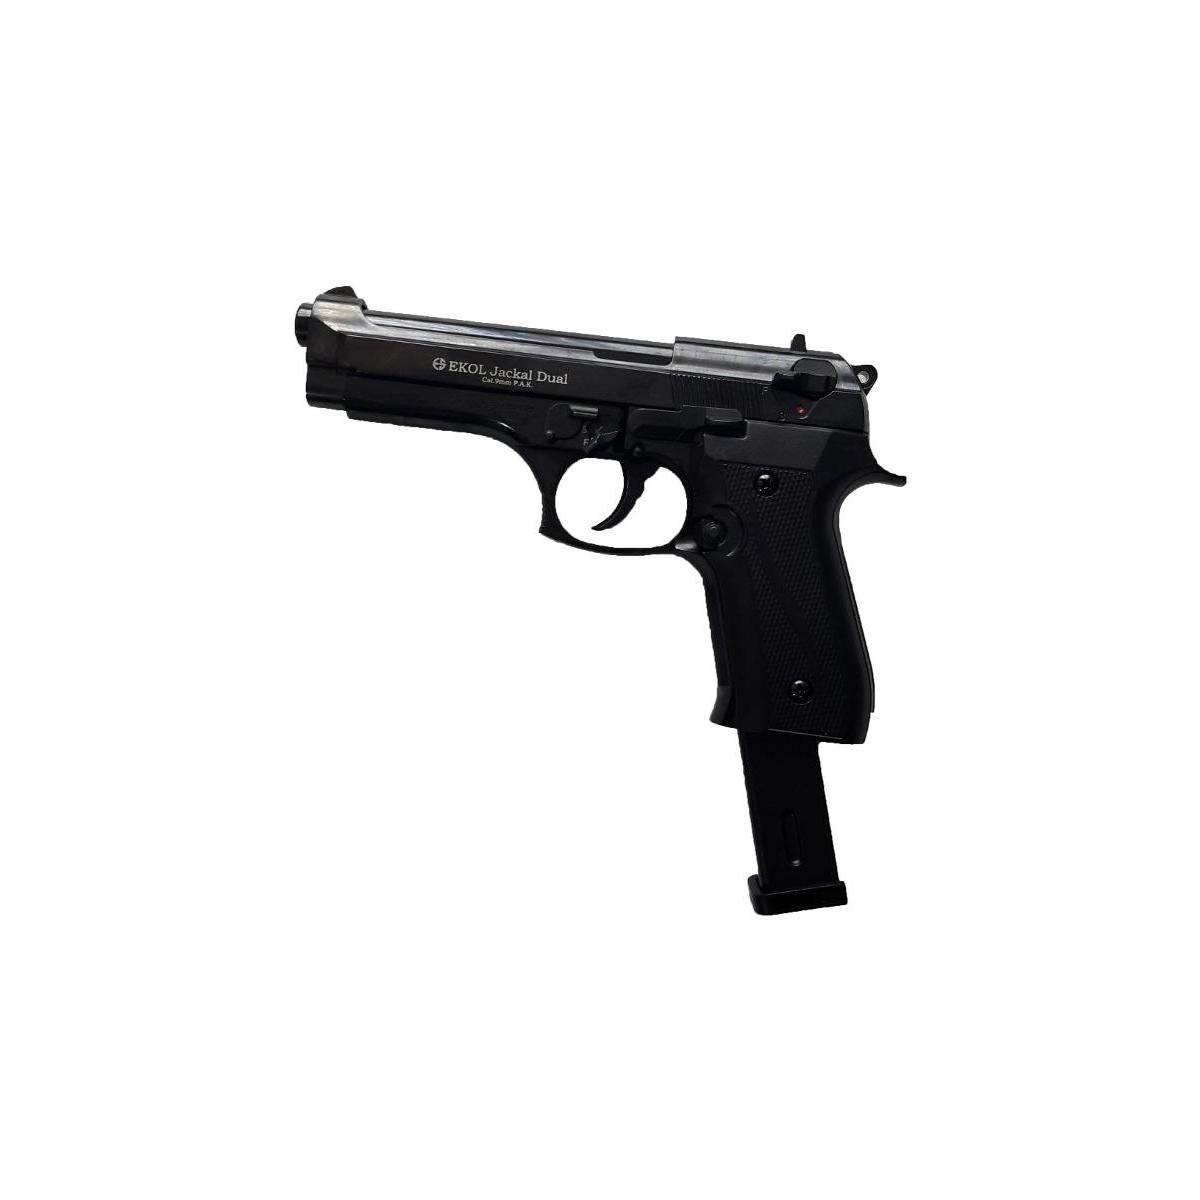  Si buscas Pistola Fogueo Ekol Beretta Jackal Magnun Proveedor 25 Salva puedes comprarlo con MYTIENDAONLINE está en venta al mejor precio